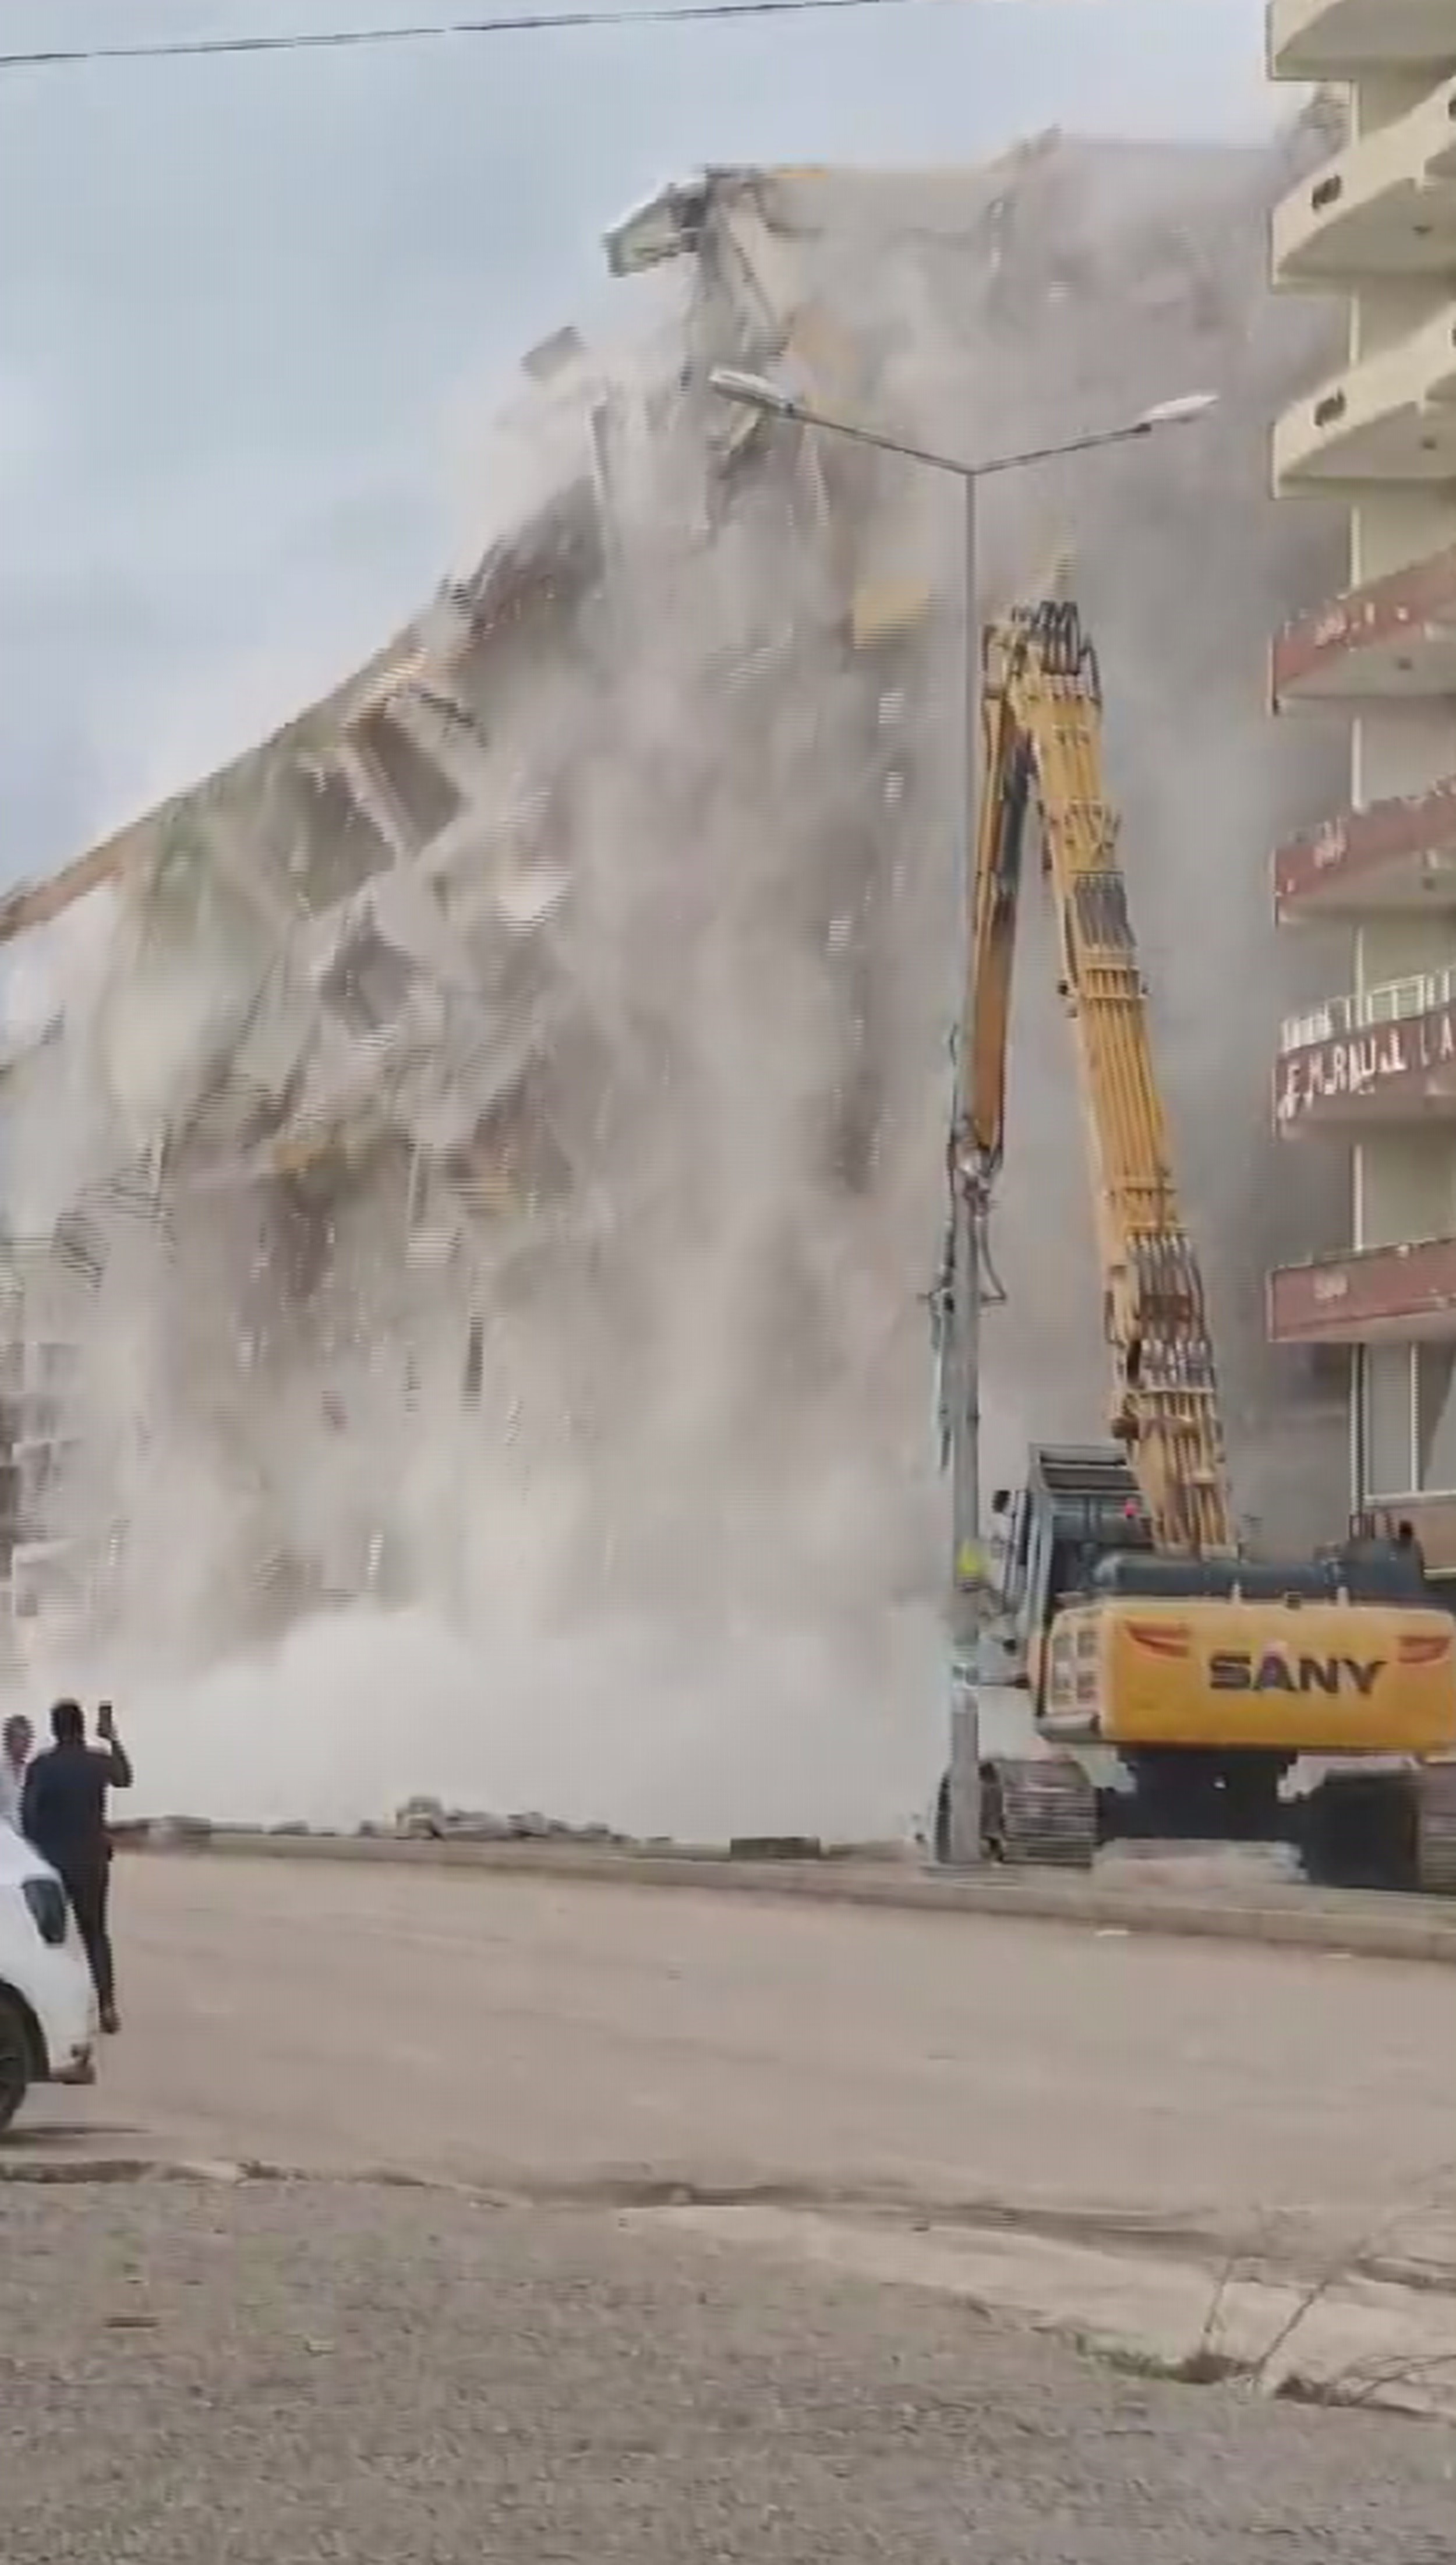 Hatay'ın Hassa ilçesinde 10 katlı bir binanın yıkım anında meraklı vatandaşların panik anları kaydedildi. 